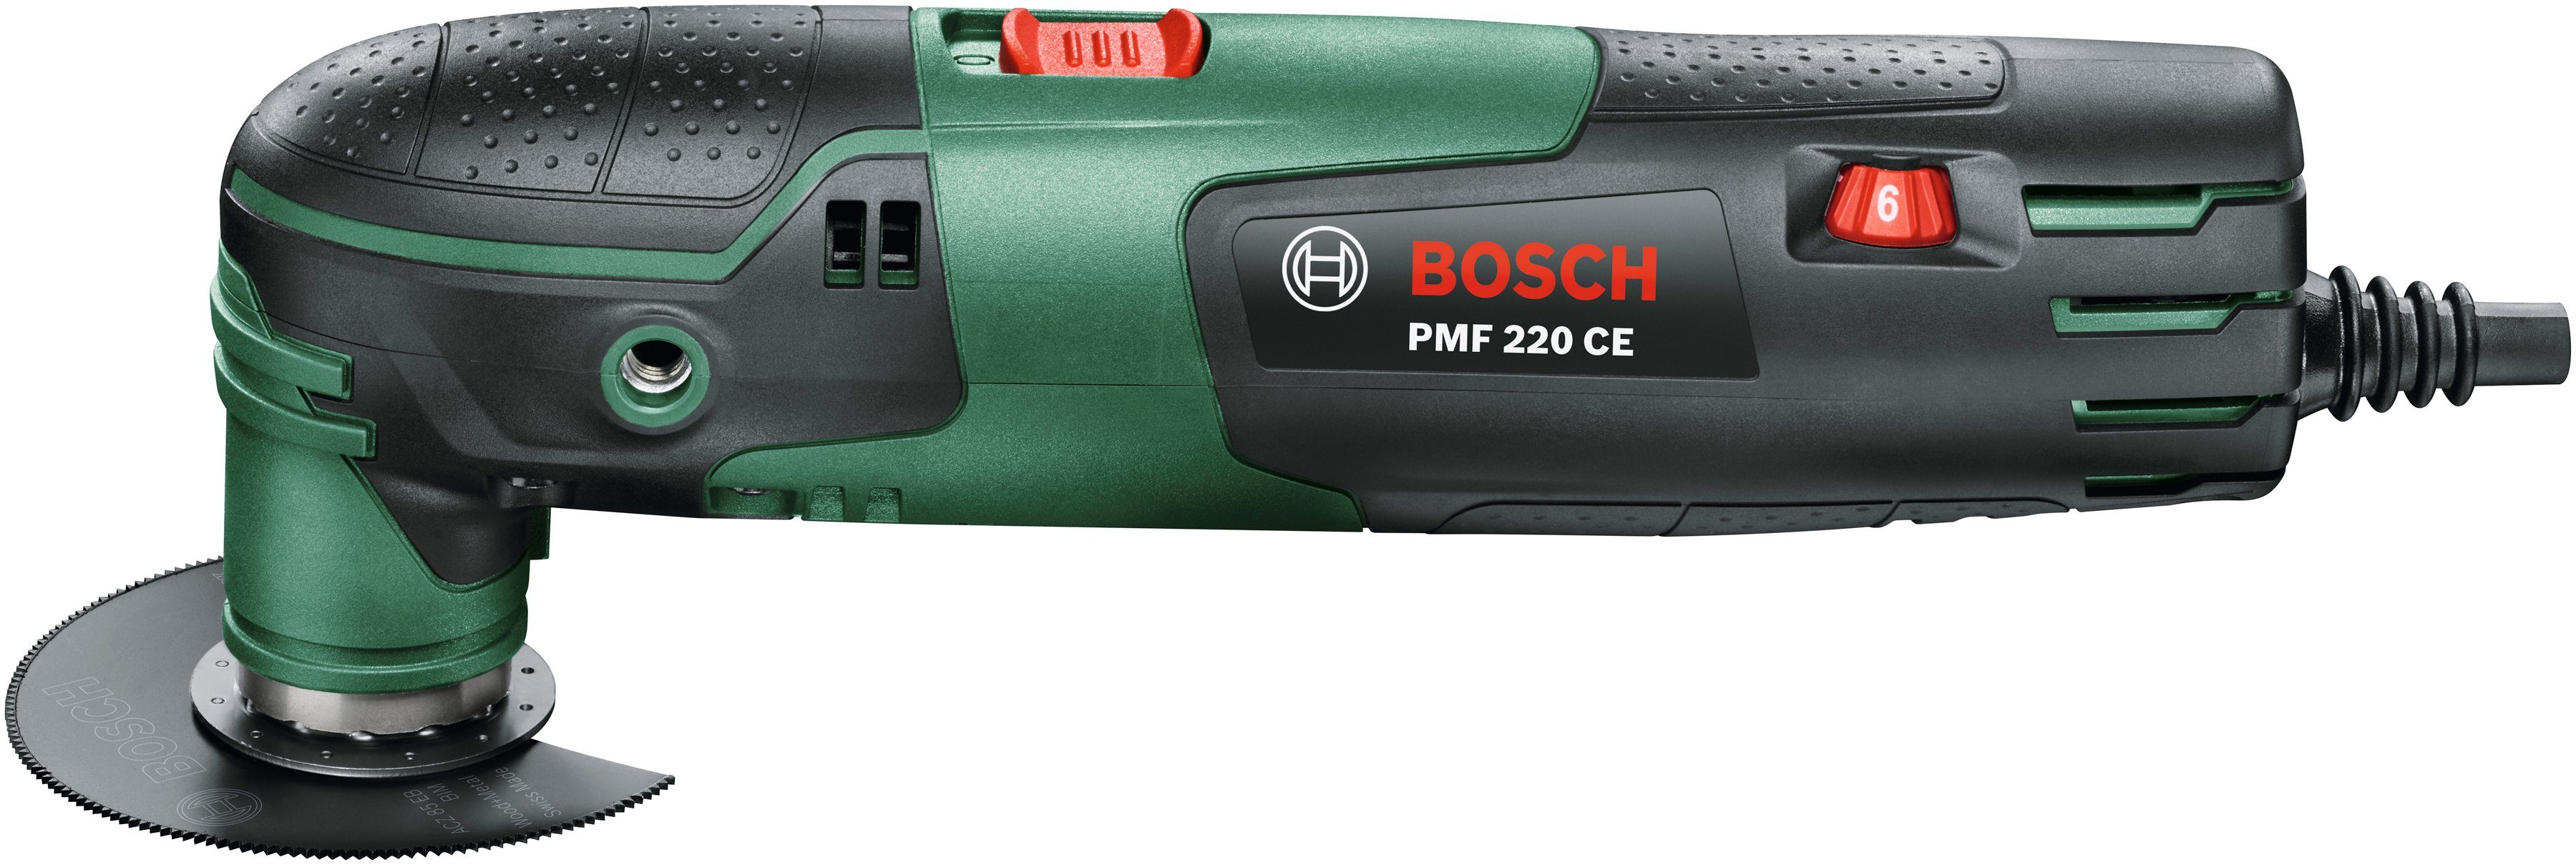 inkl. Bosch Elektro-Multifunktionswerkzeug & Garden Zubehör CE, W, 220 und Home PMF 220 Kunststoffkoffer